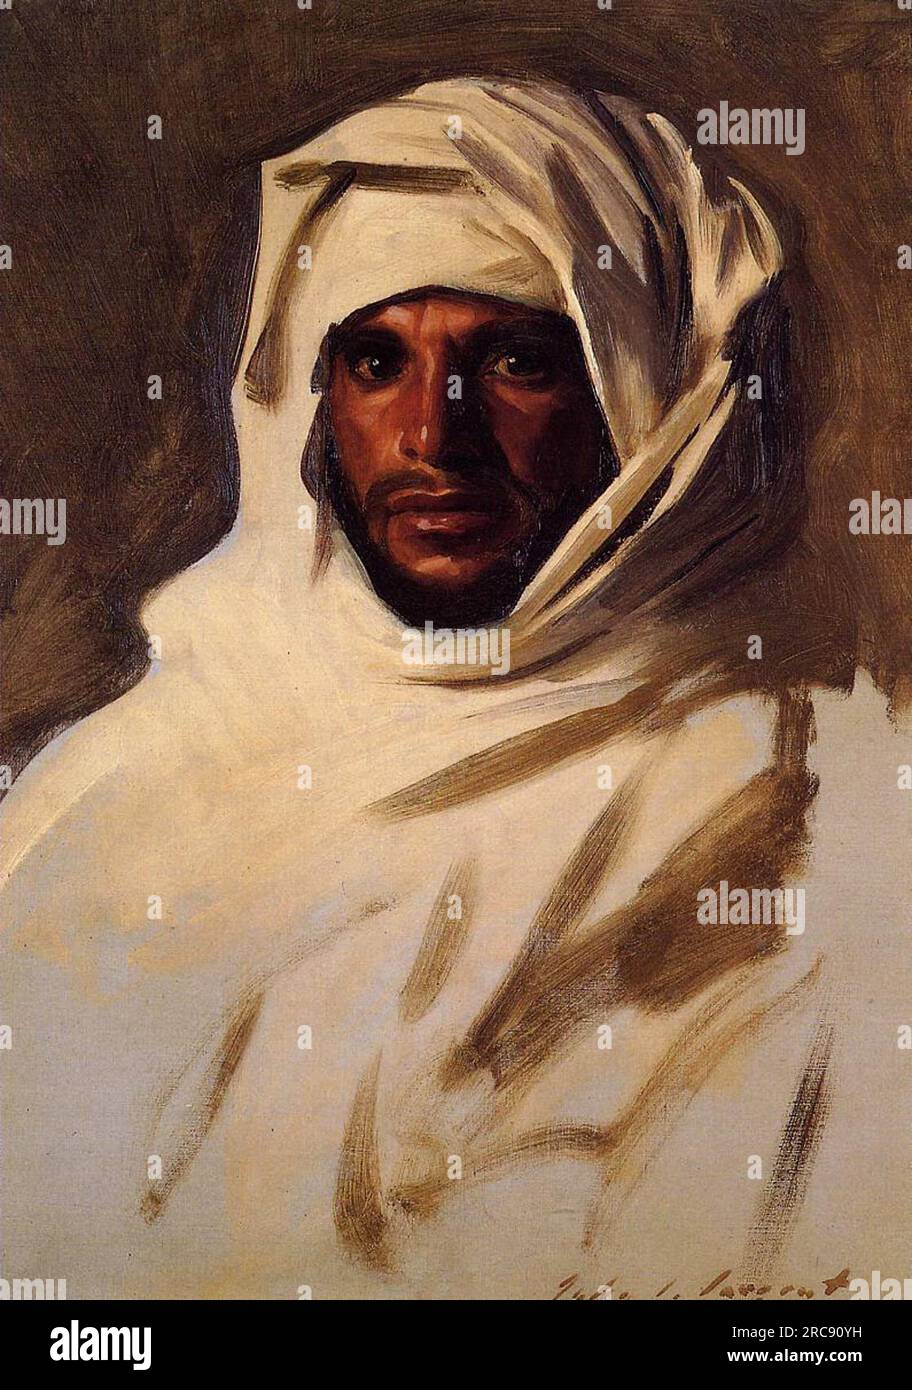 Un arabe bédouin 1891 de John Singer Sargent Banque D'Images